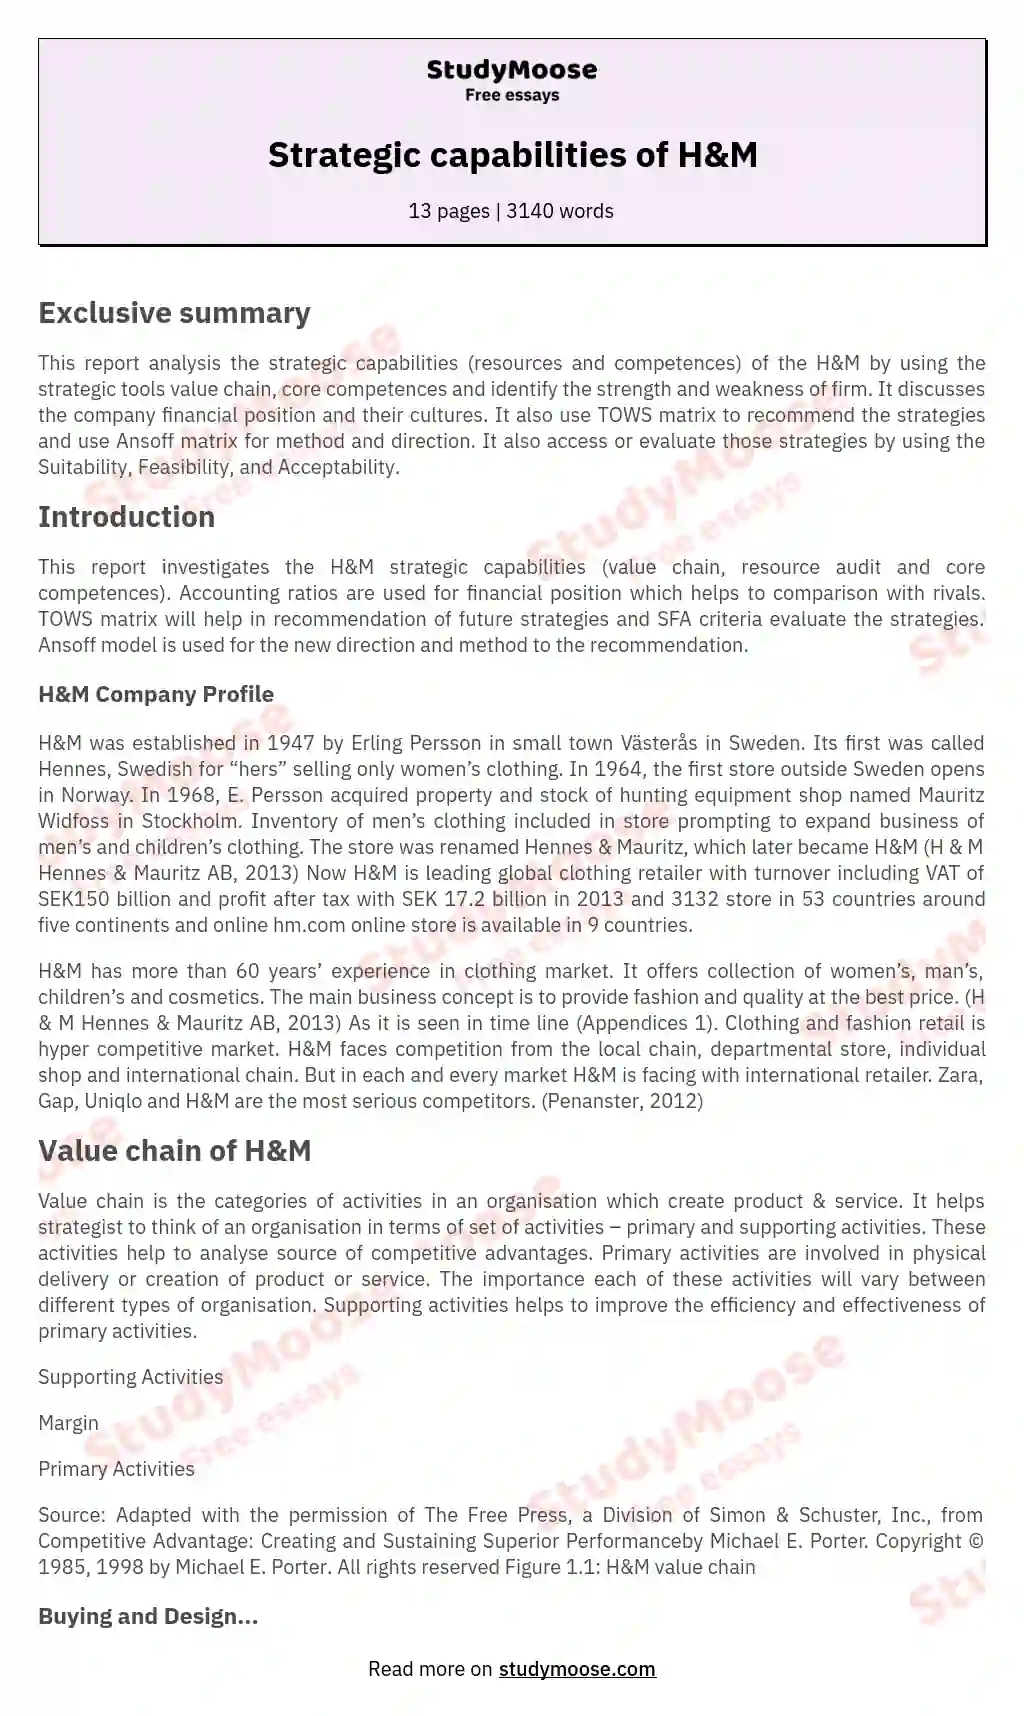 Strategic capabilities of H&M essay